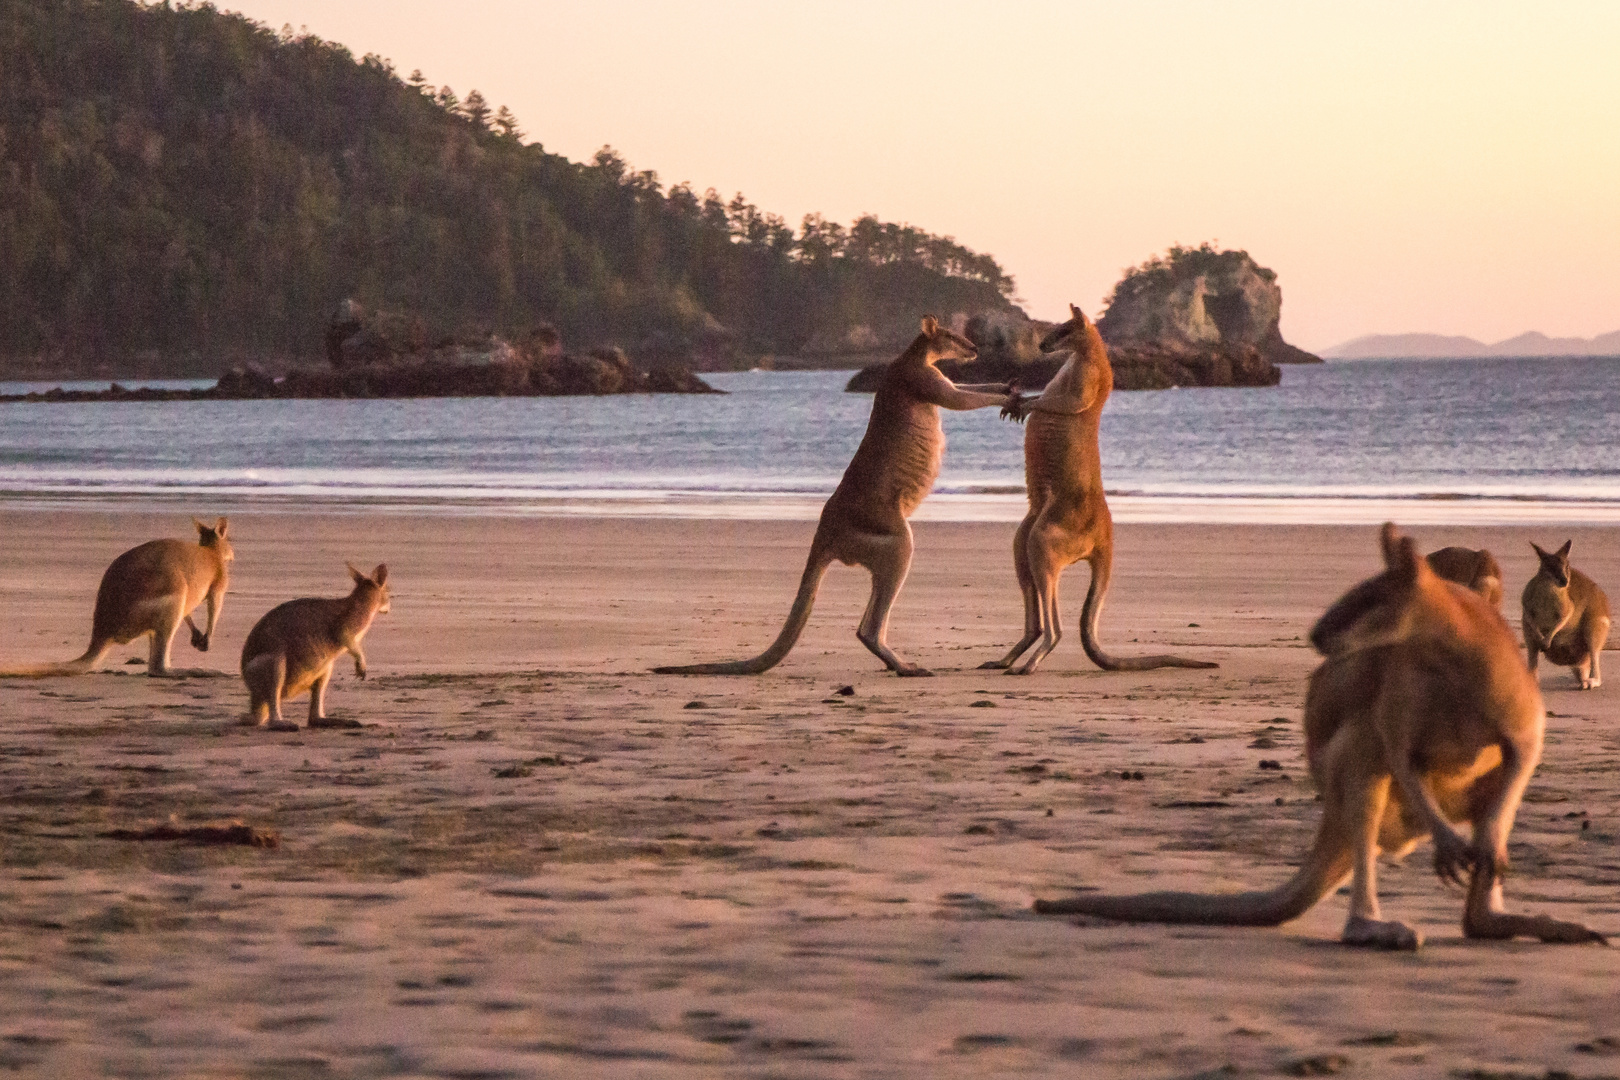 Kangaroos am Strand von Cape Hillsborough, Queensland, Australien 2015